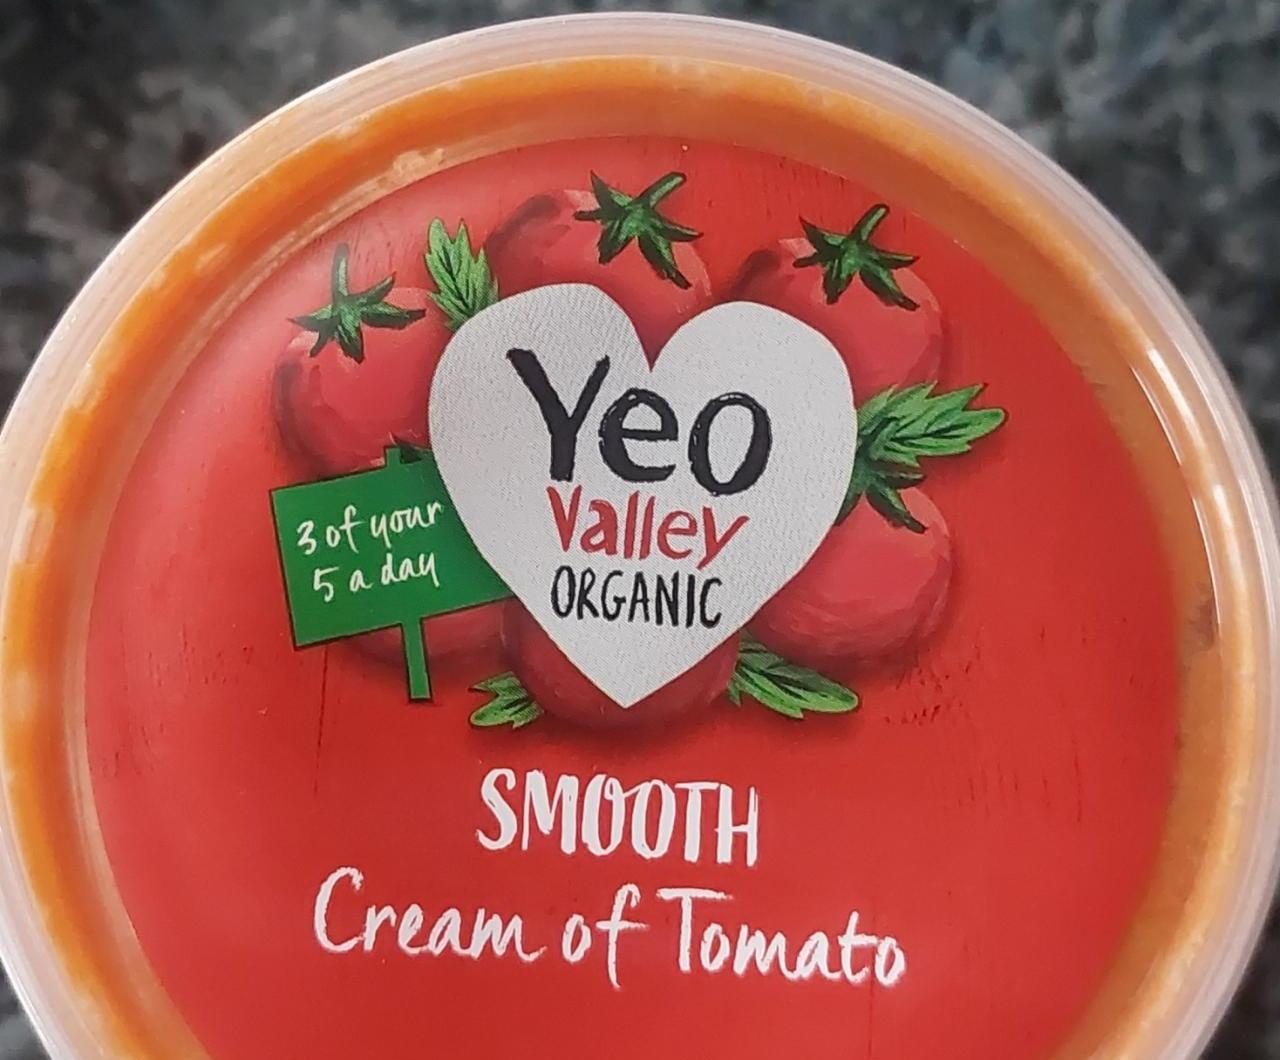 Fotografie - Smooth cream of tomato Yeo valley